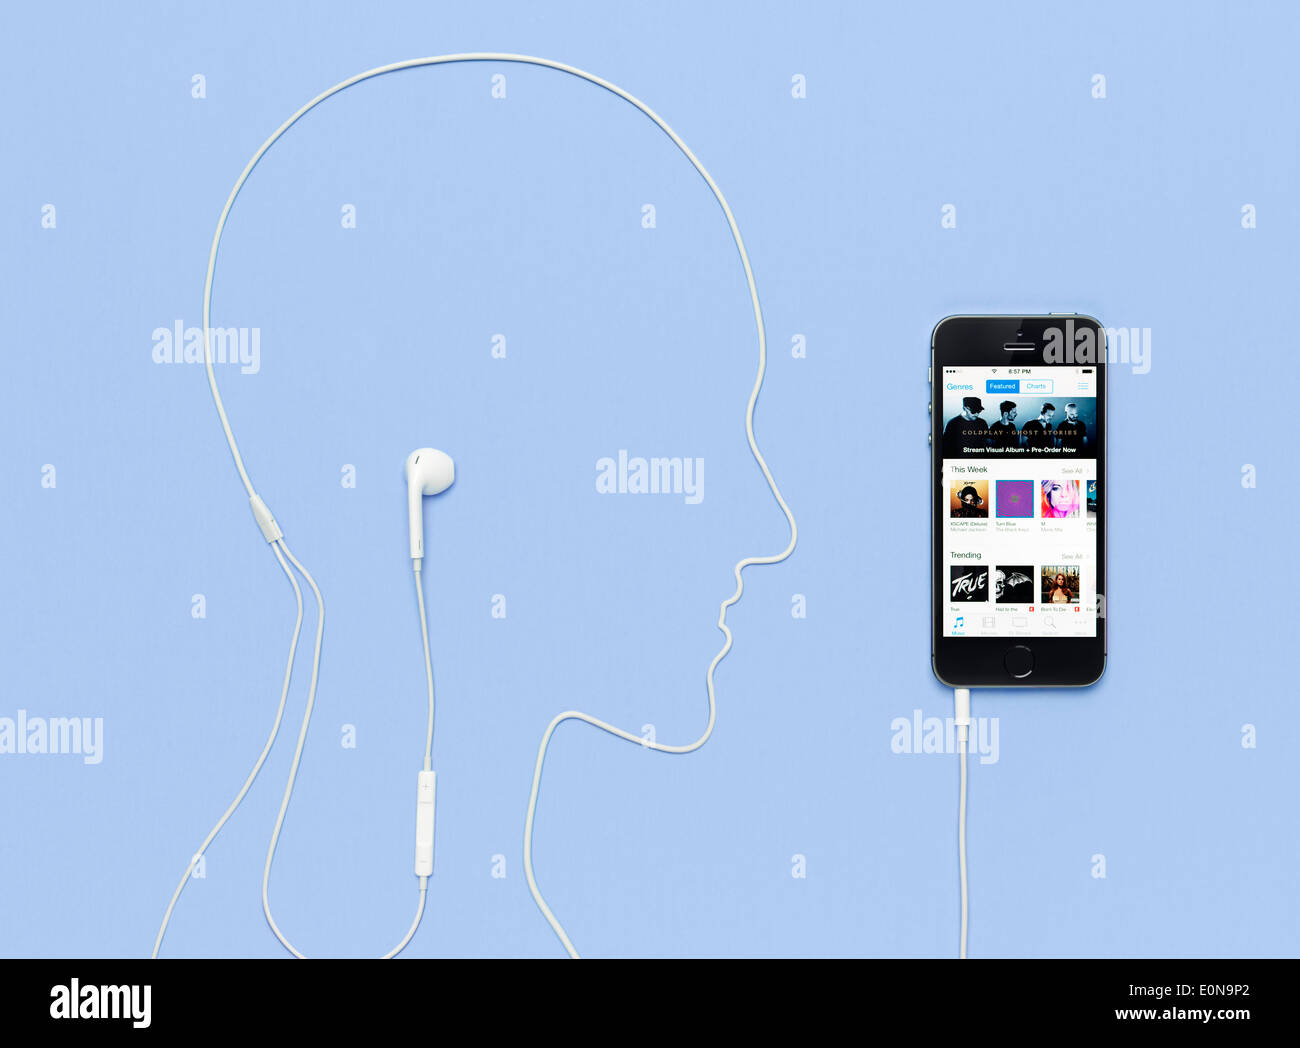 Tête d'homme contours pris par un cordon casque branché sur l'iPhone 5s téléphone avec iTunes music store sur son afficheur. Concept créatif Banque D'Images